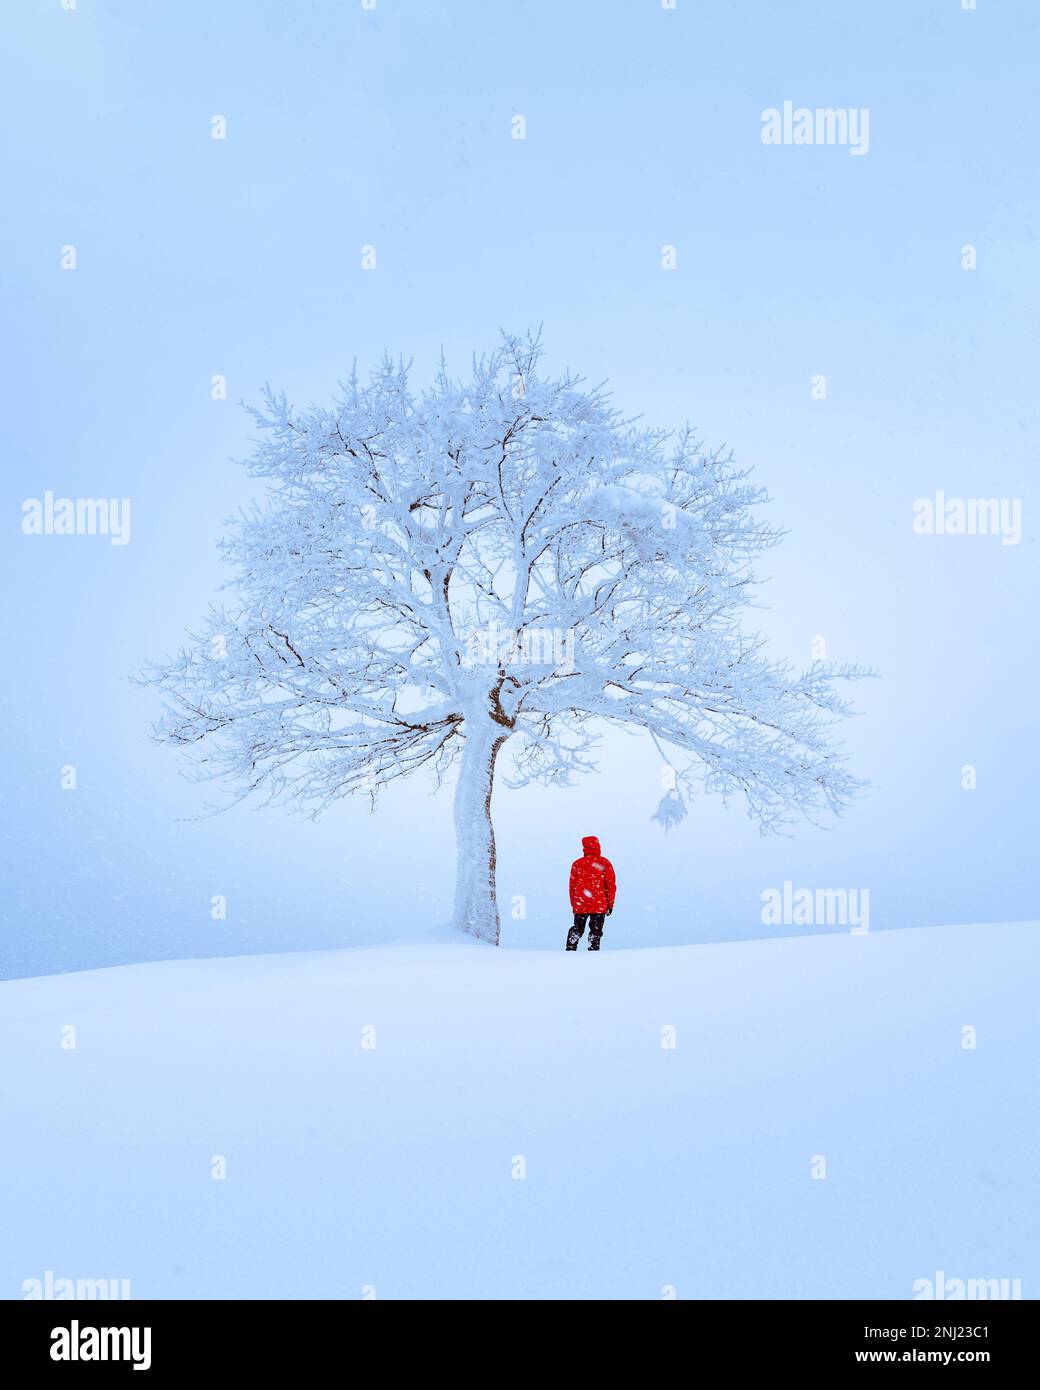 Fantastische Landschaft mit einem einsamen verschneiten Baum im Winter. Minimalistischer Szene in trüben und nebligen Wetter Stockfoto